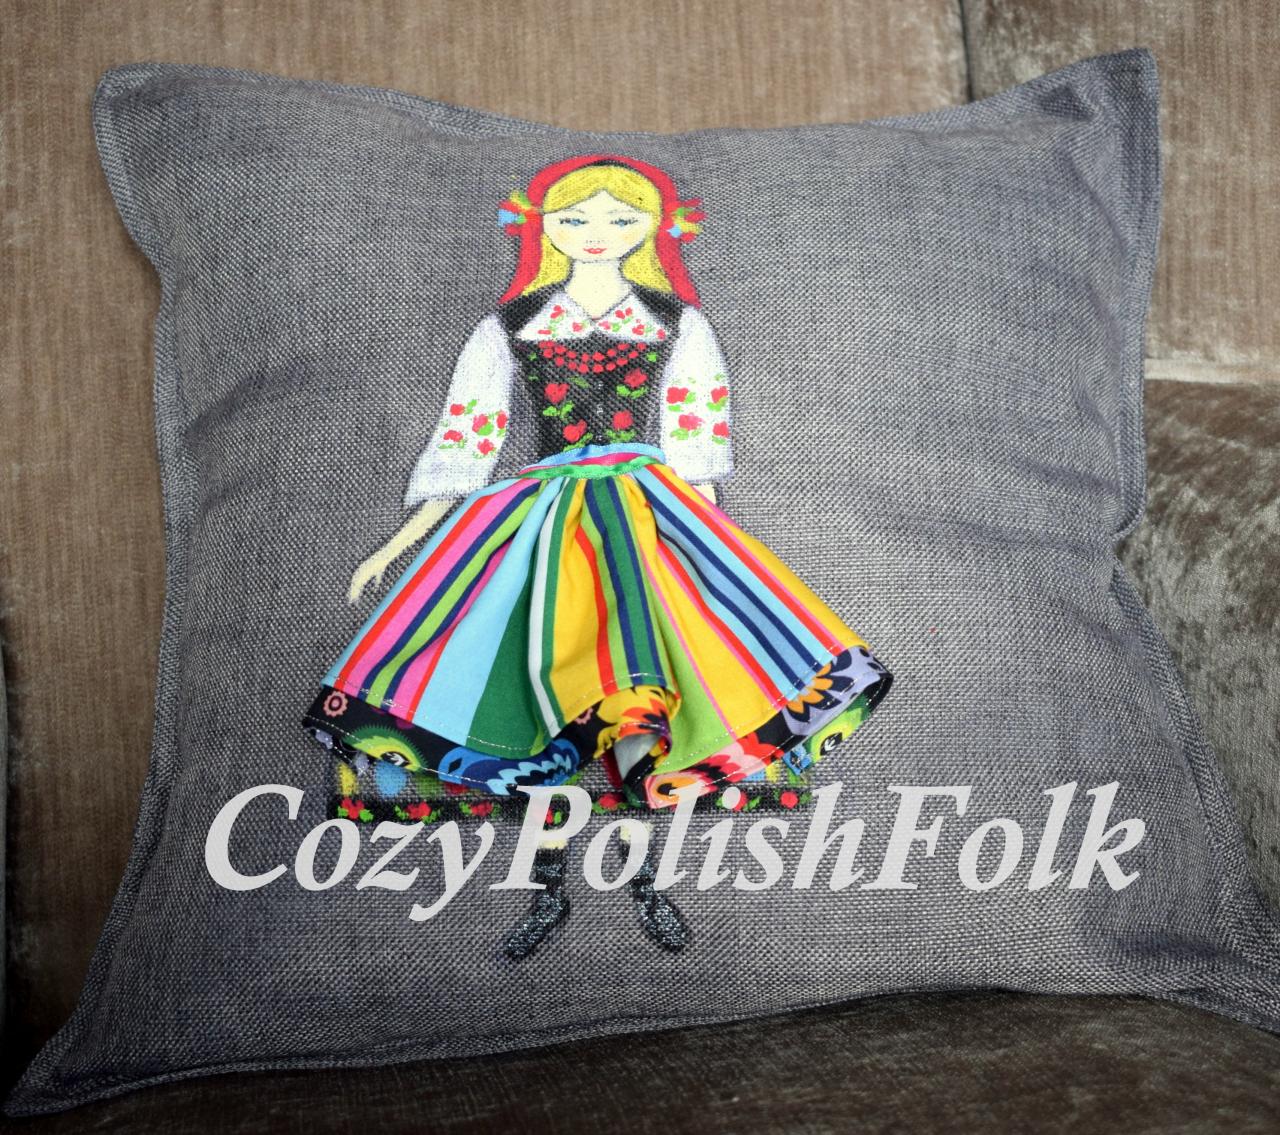 Polish-lowicz Region Folk Art Inspired Cushion Cover,cushion Cover,hand Painted Folk Cushion,polish Folk Art,lowicz Cushion Cover,folk Art